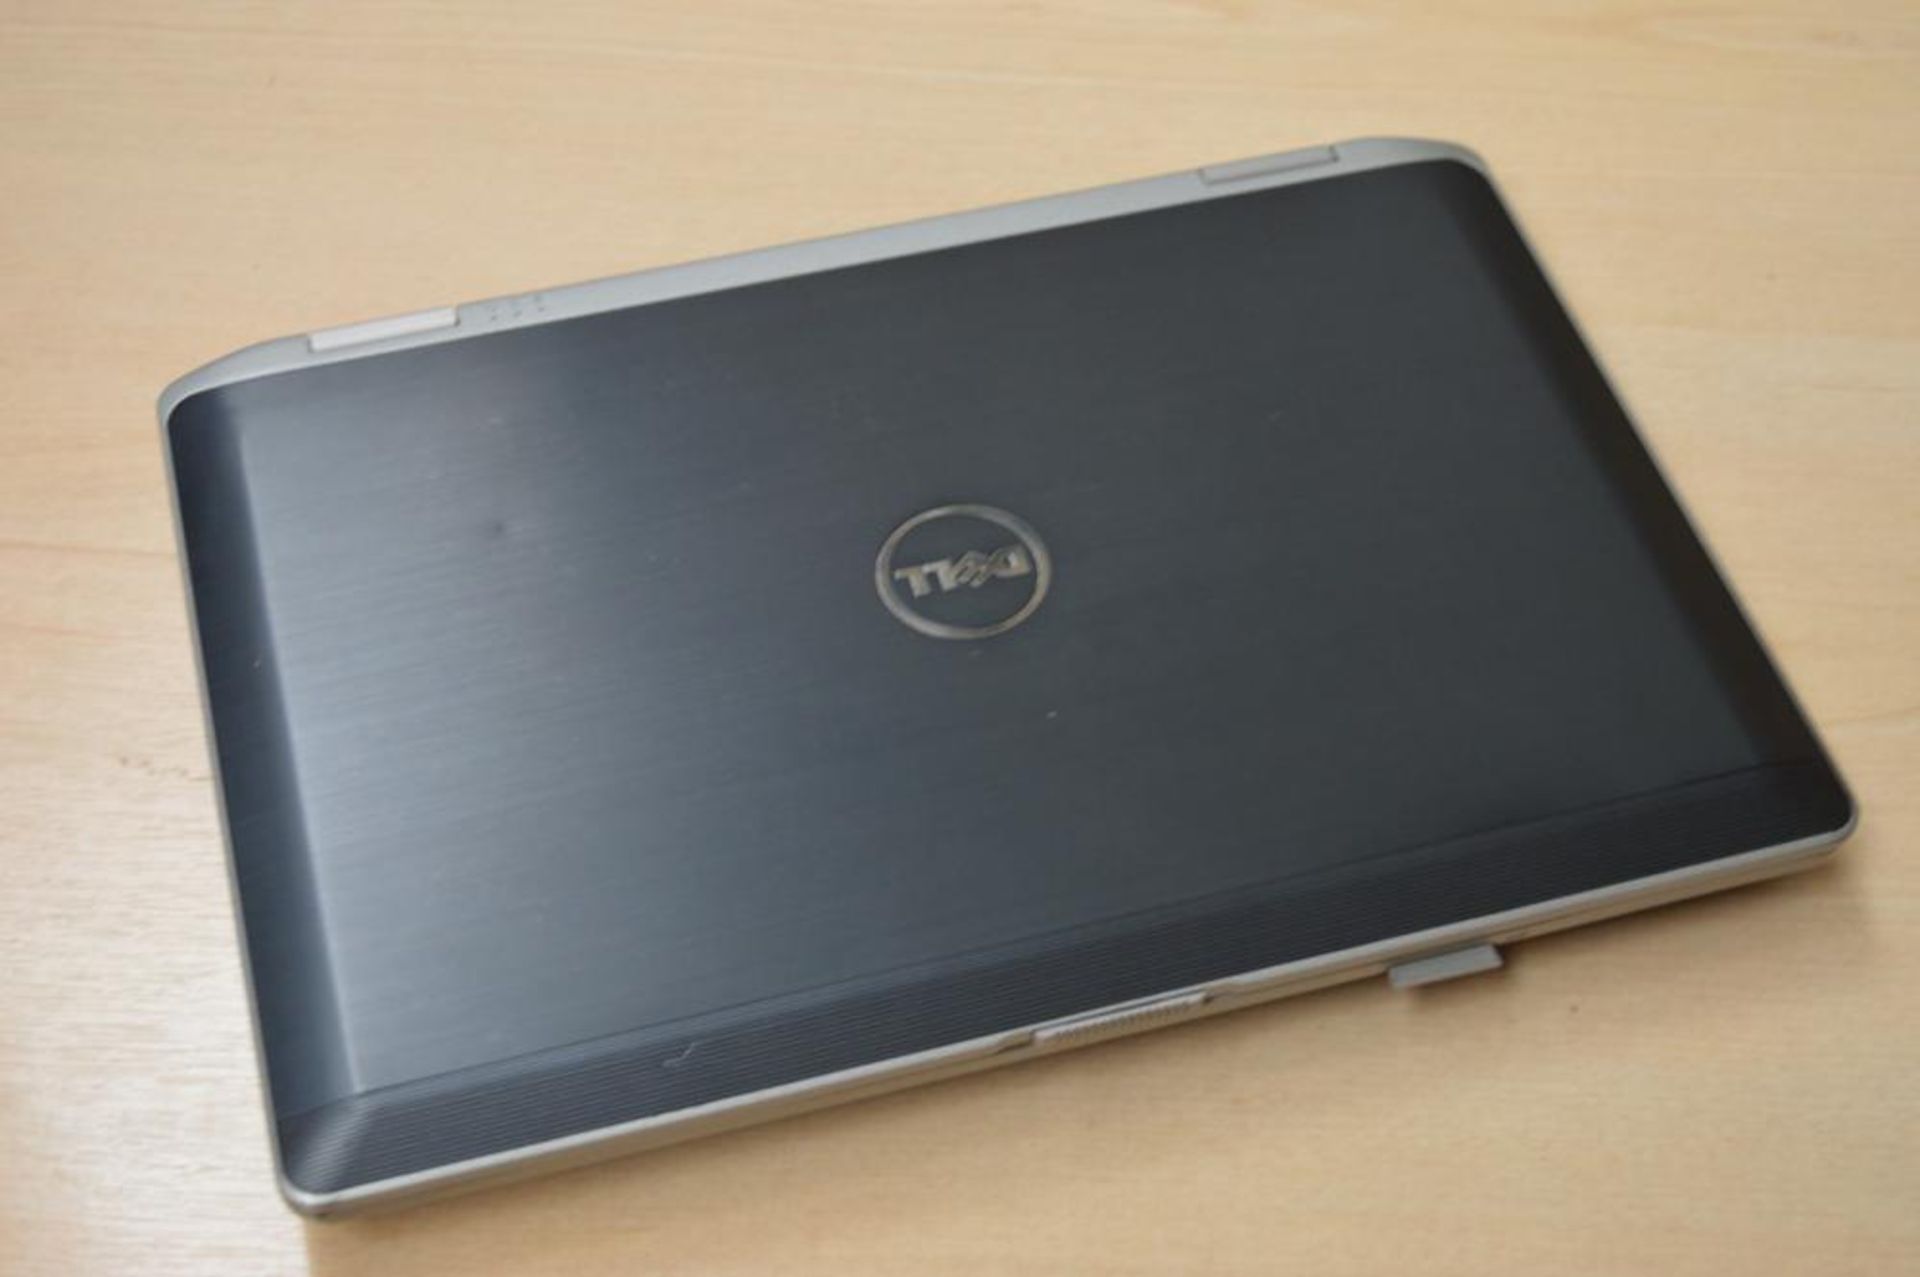 1 x Dell Latitude E6430 Laptop Computer - 14 Inch Screen - Features Intel Core i5 2.6ghz Processor a - Bild 4 aus 10